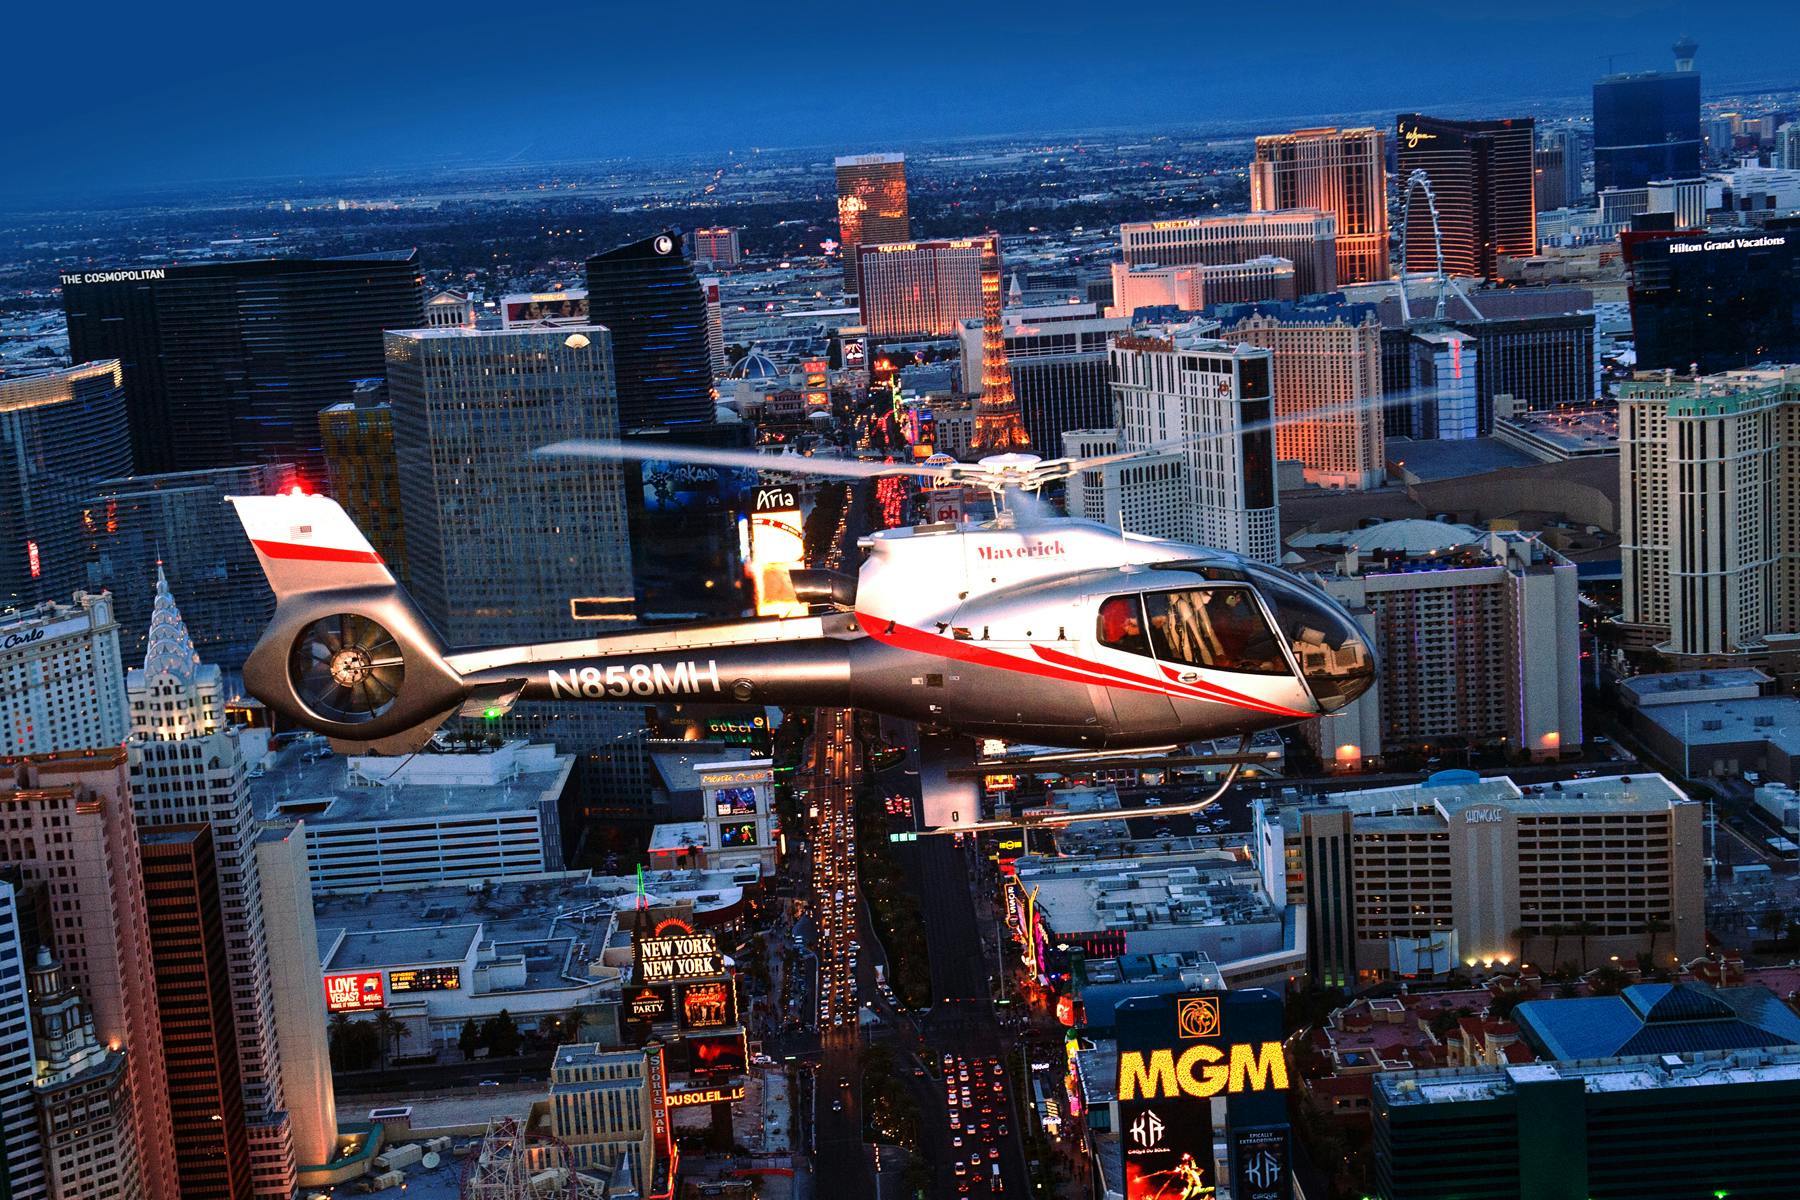 Las Vegas Strip helicopter tour